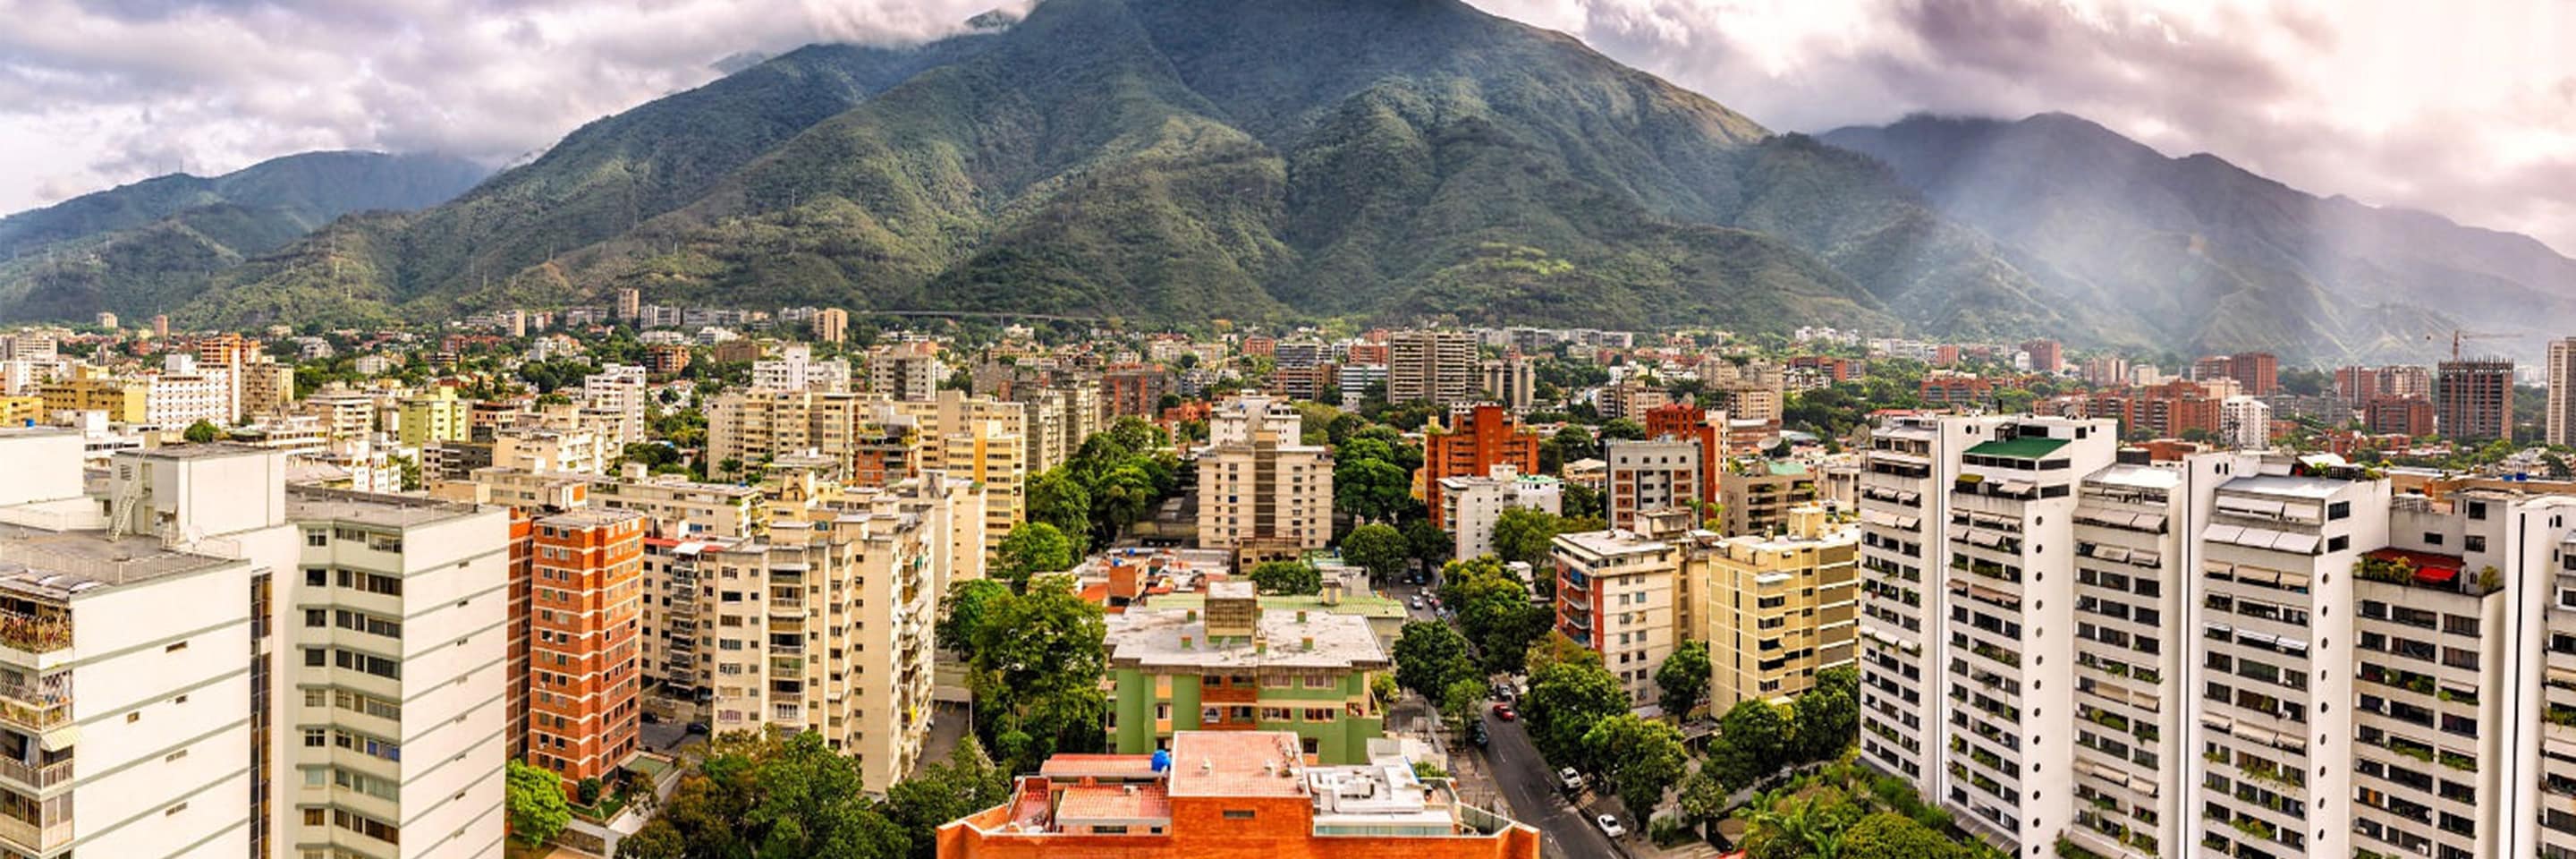 Hôtels à Caracas